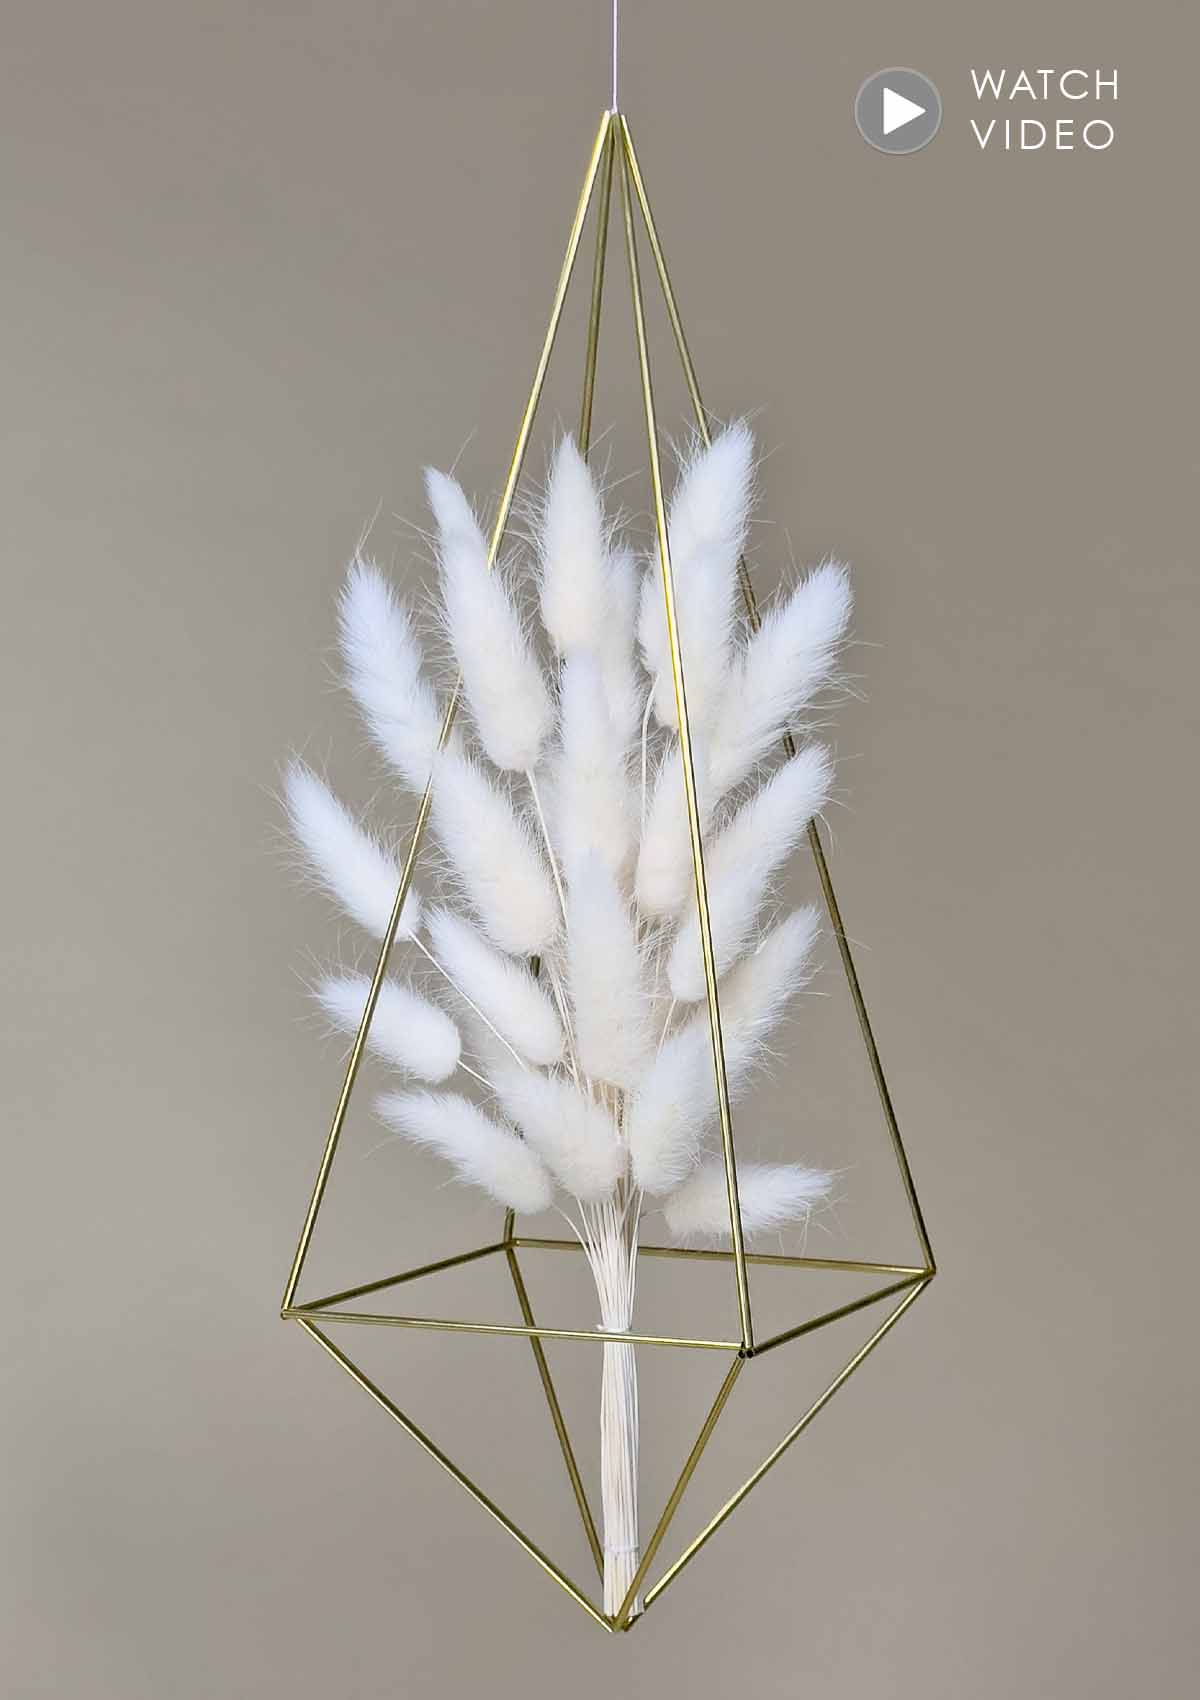 Das LAGURUS FLOWER MOBILE ist ein handgefertigtes Design-Mobile in der Größe Large mit einem Bund edler, creme-weisser Lagurus Trockenblumen.